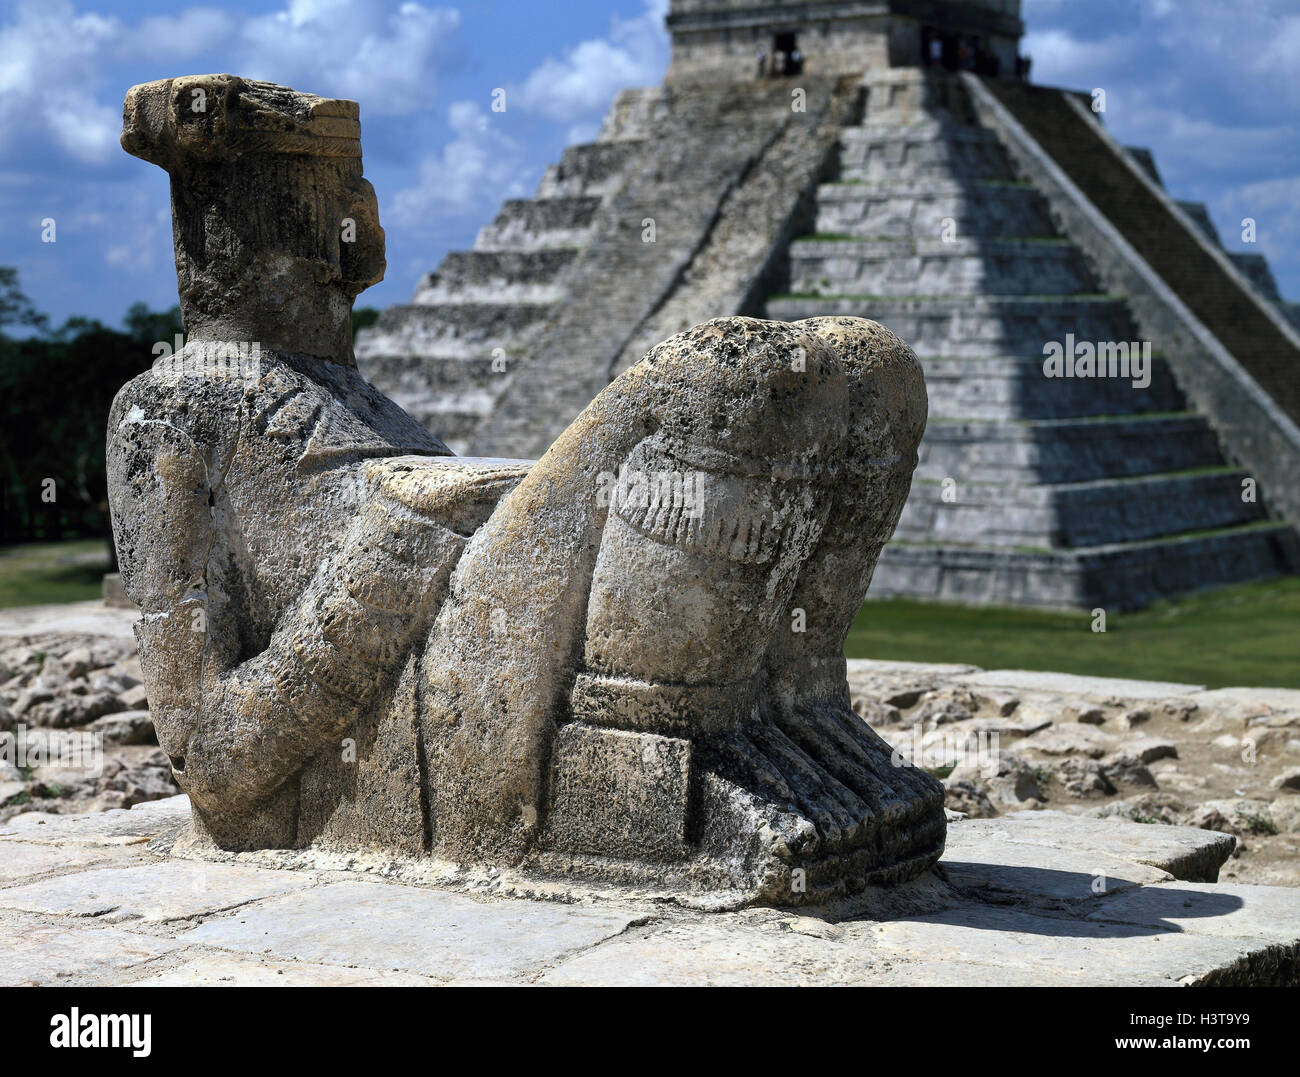 mexico-yucatan-chichen-itza-chac-mool-statue-tablespoon-castillo-maya-H3T9Y9.jpg